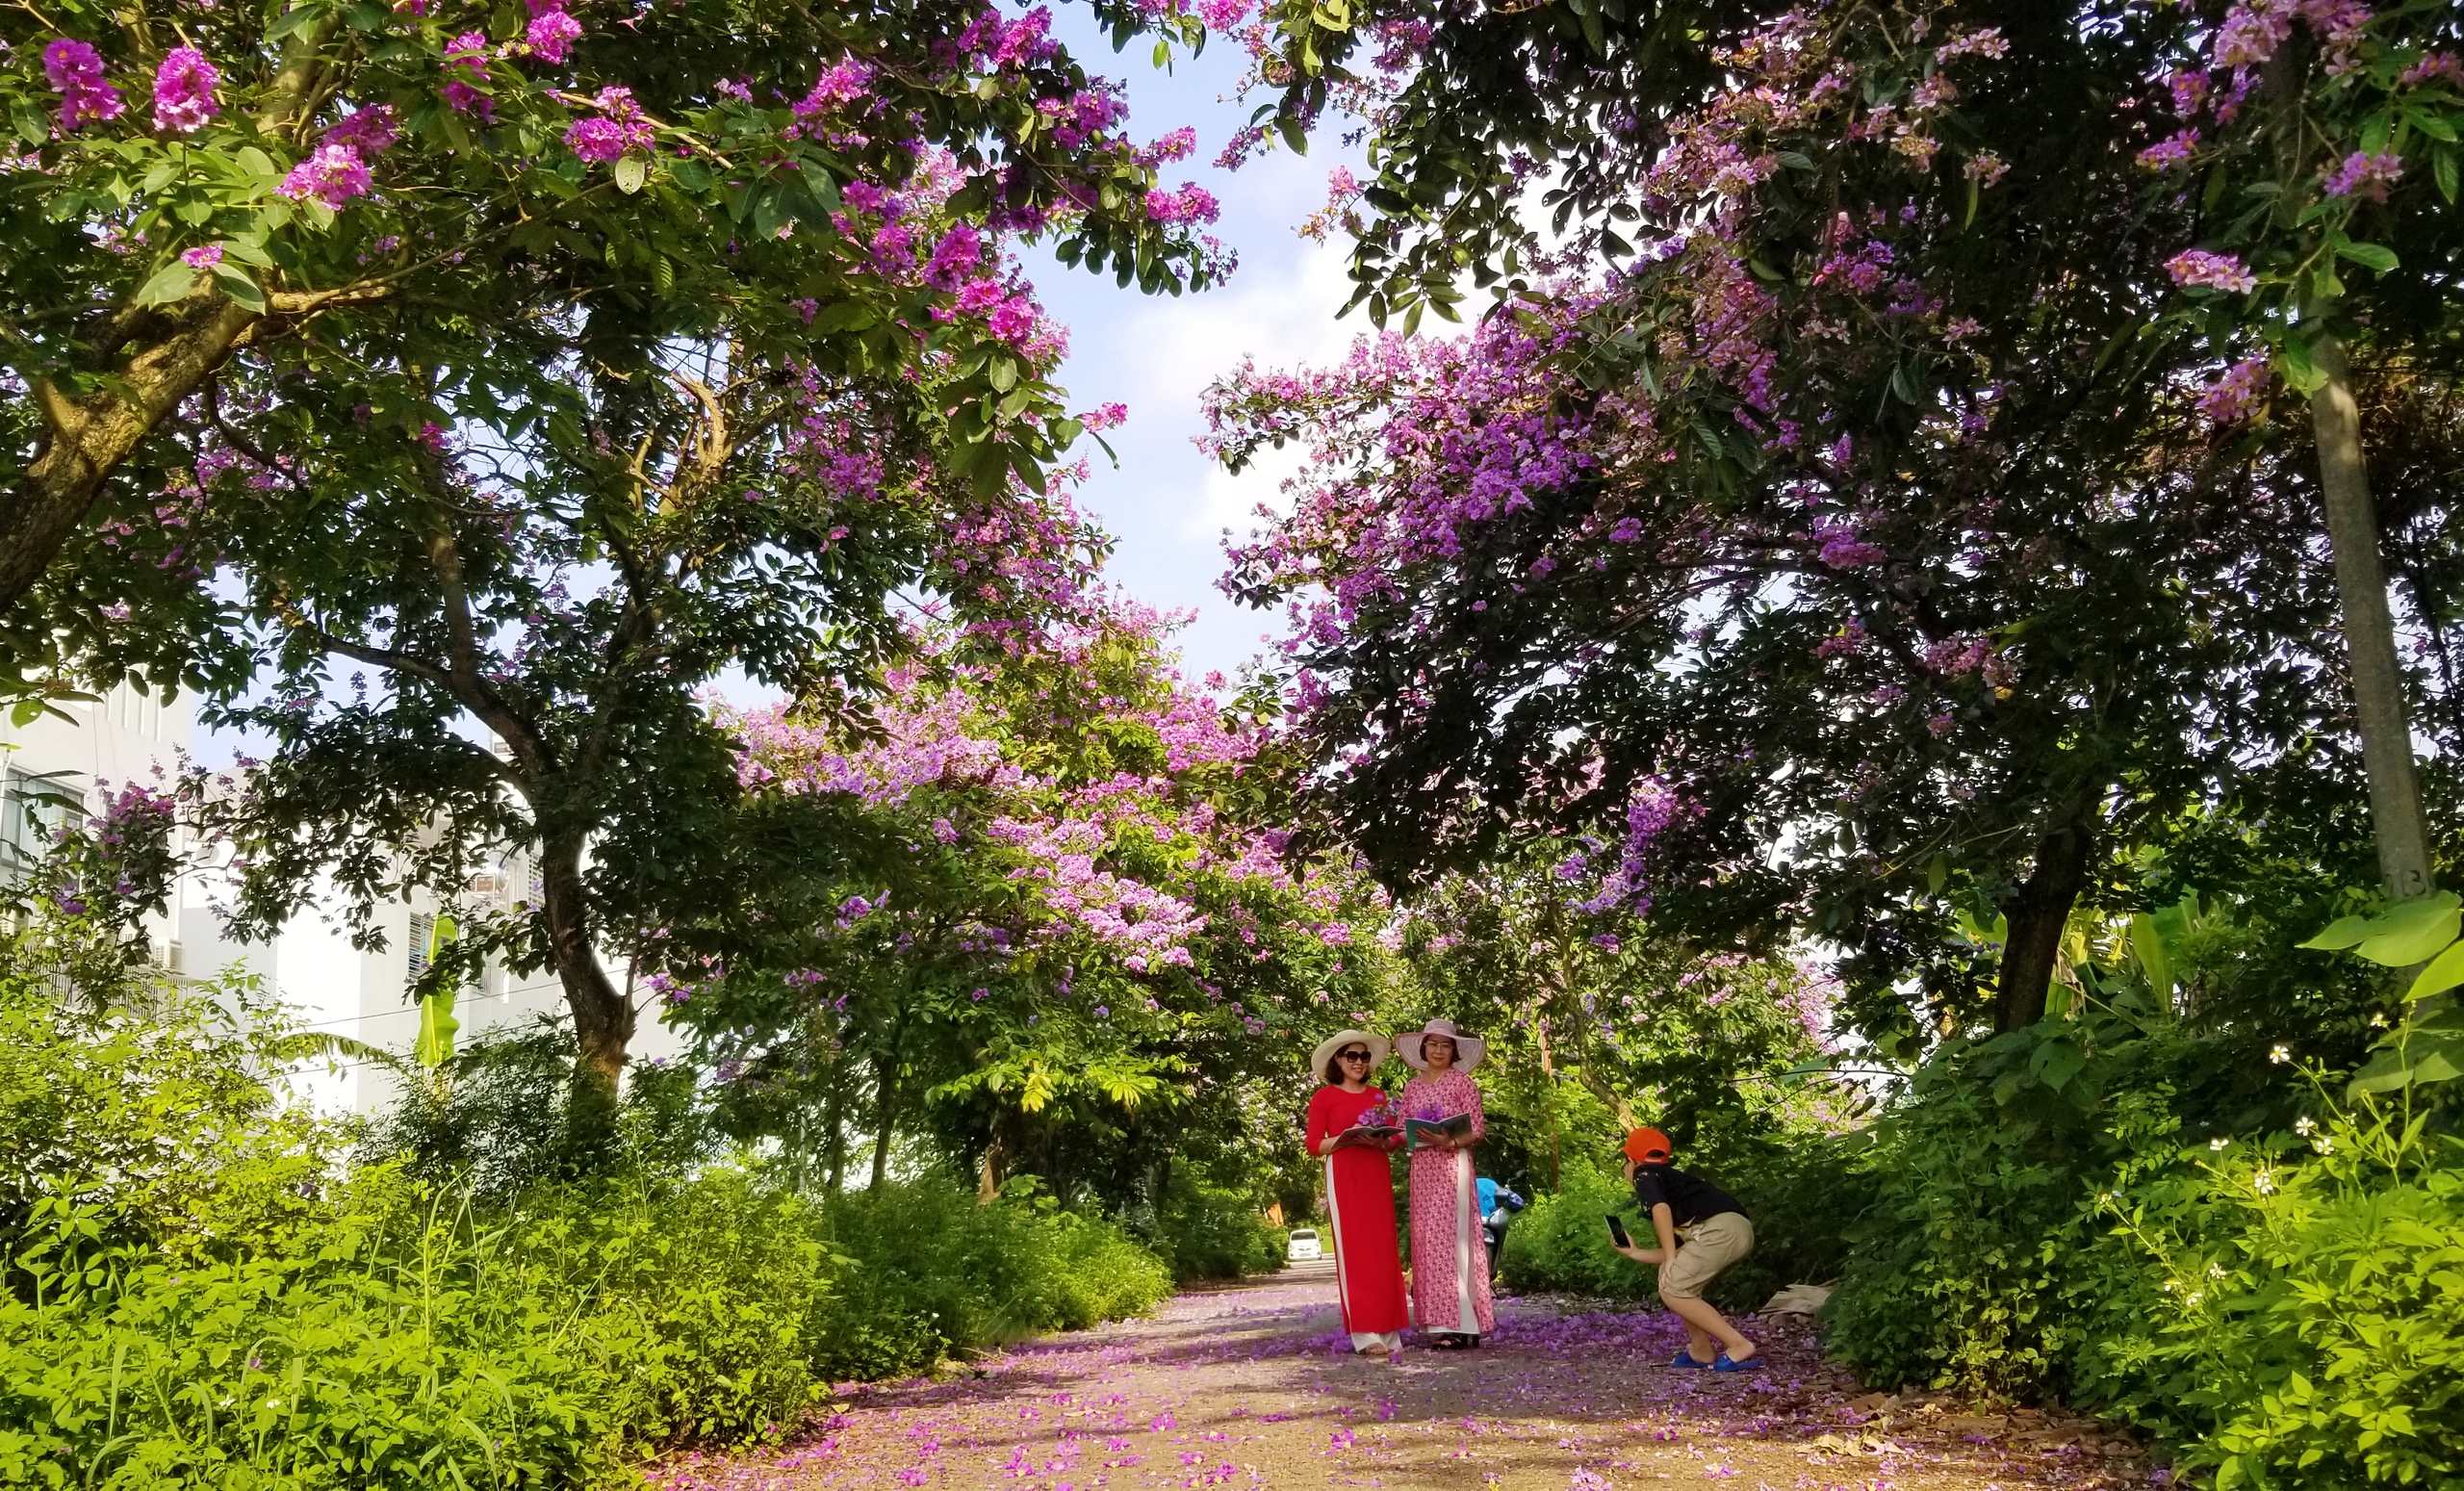 Khu đô thị Vườn Hồng (P.Đằng Hải, Q.Hải An) đang trở thành điểm đến của nhiều người dân yêu thích sắc tím bằng lăng bởi khung cảnh ở đây thanh bình, mát mẻ và đẹp như một khu rừng hoa